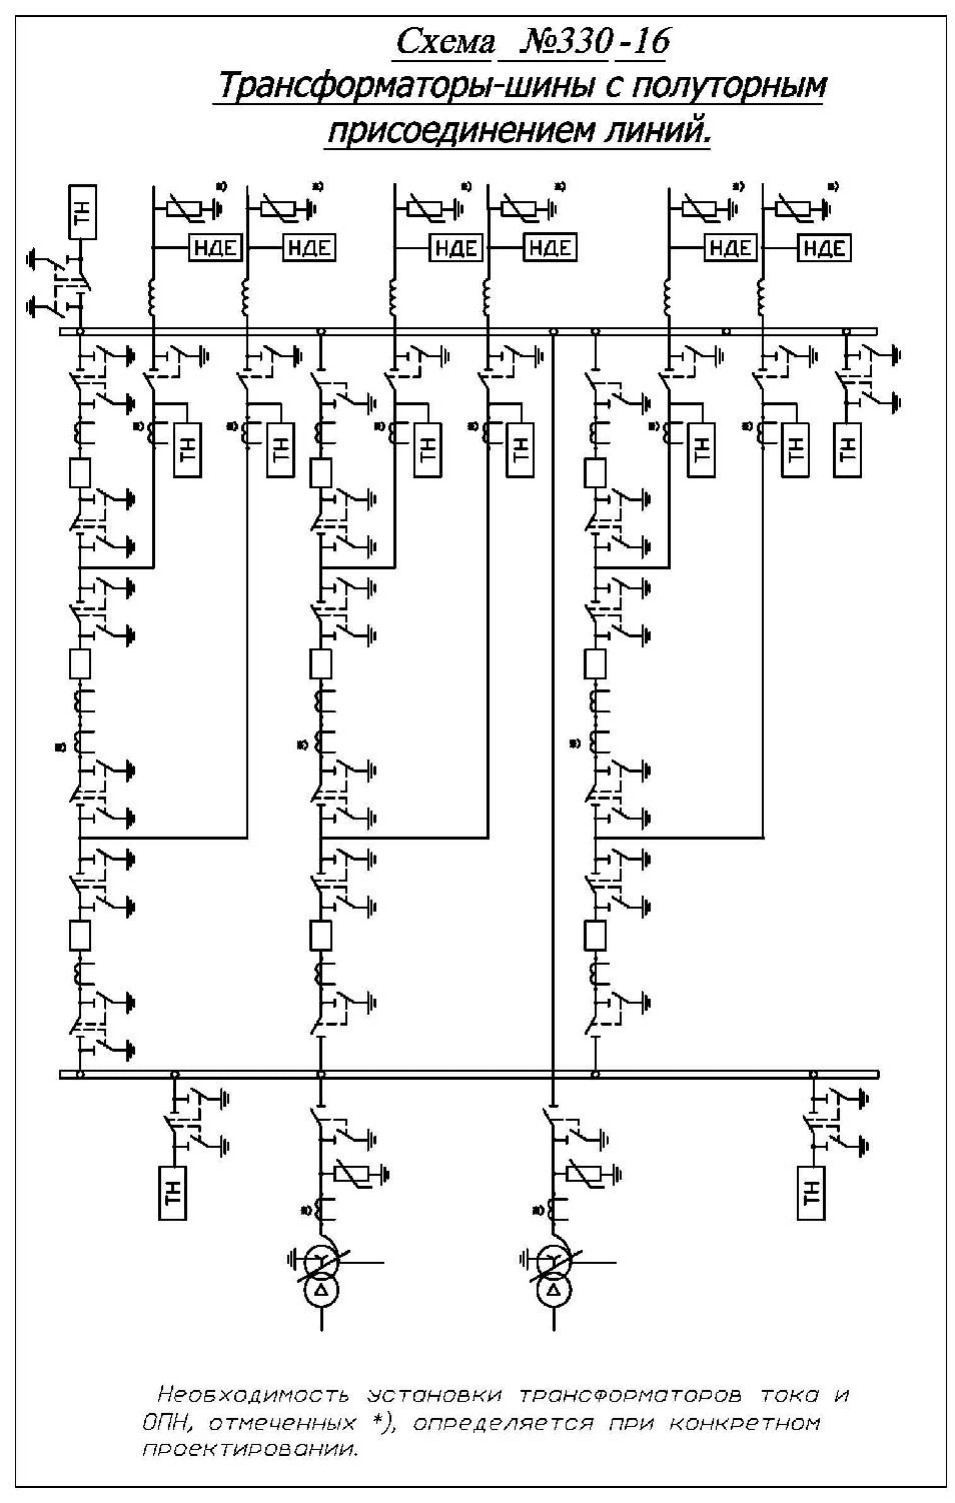 Схема трансформаторы-шины с полуторным присоединением линий